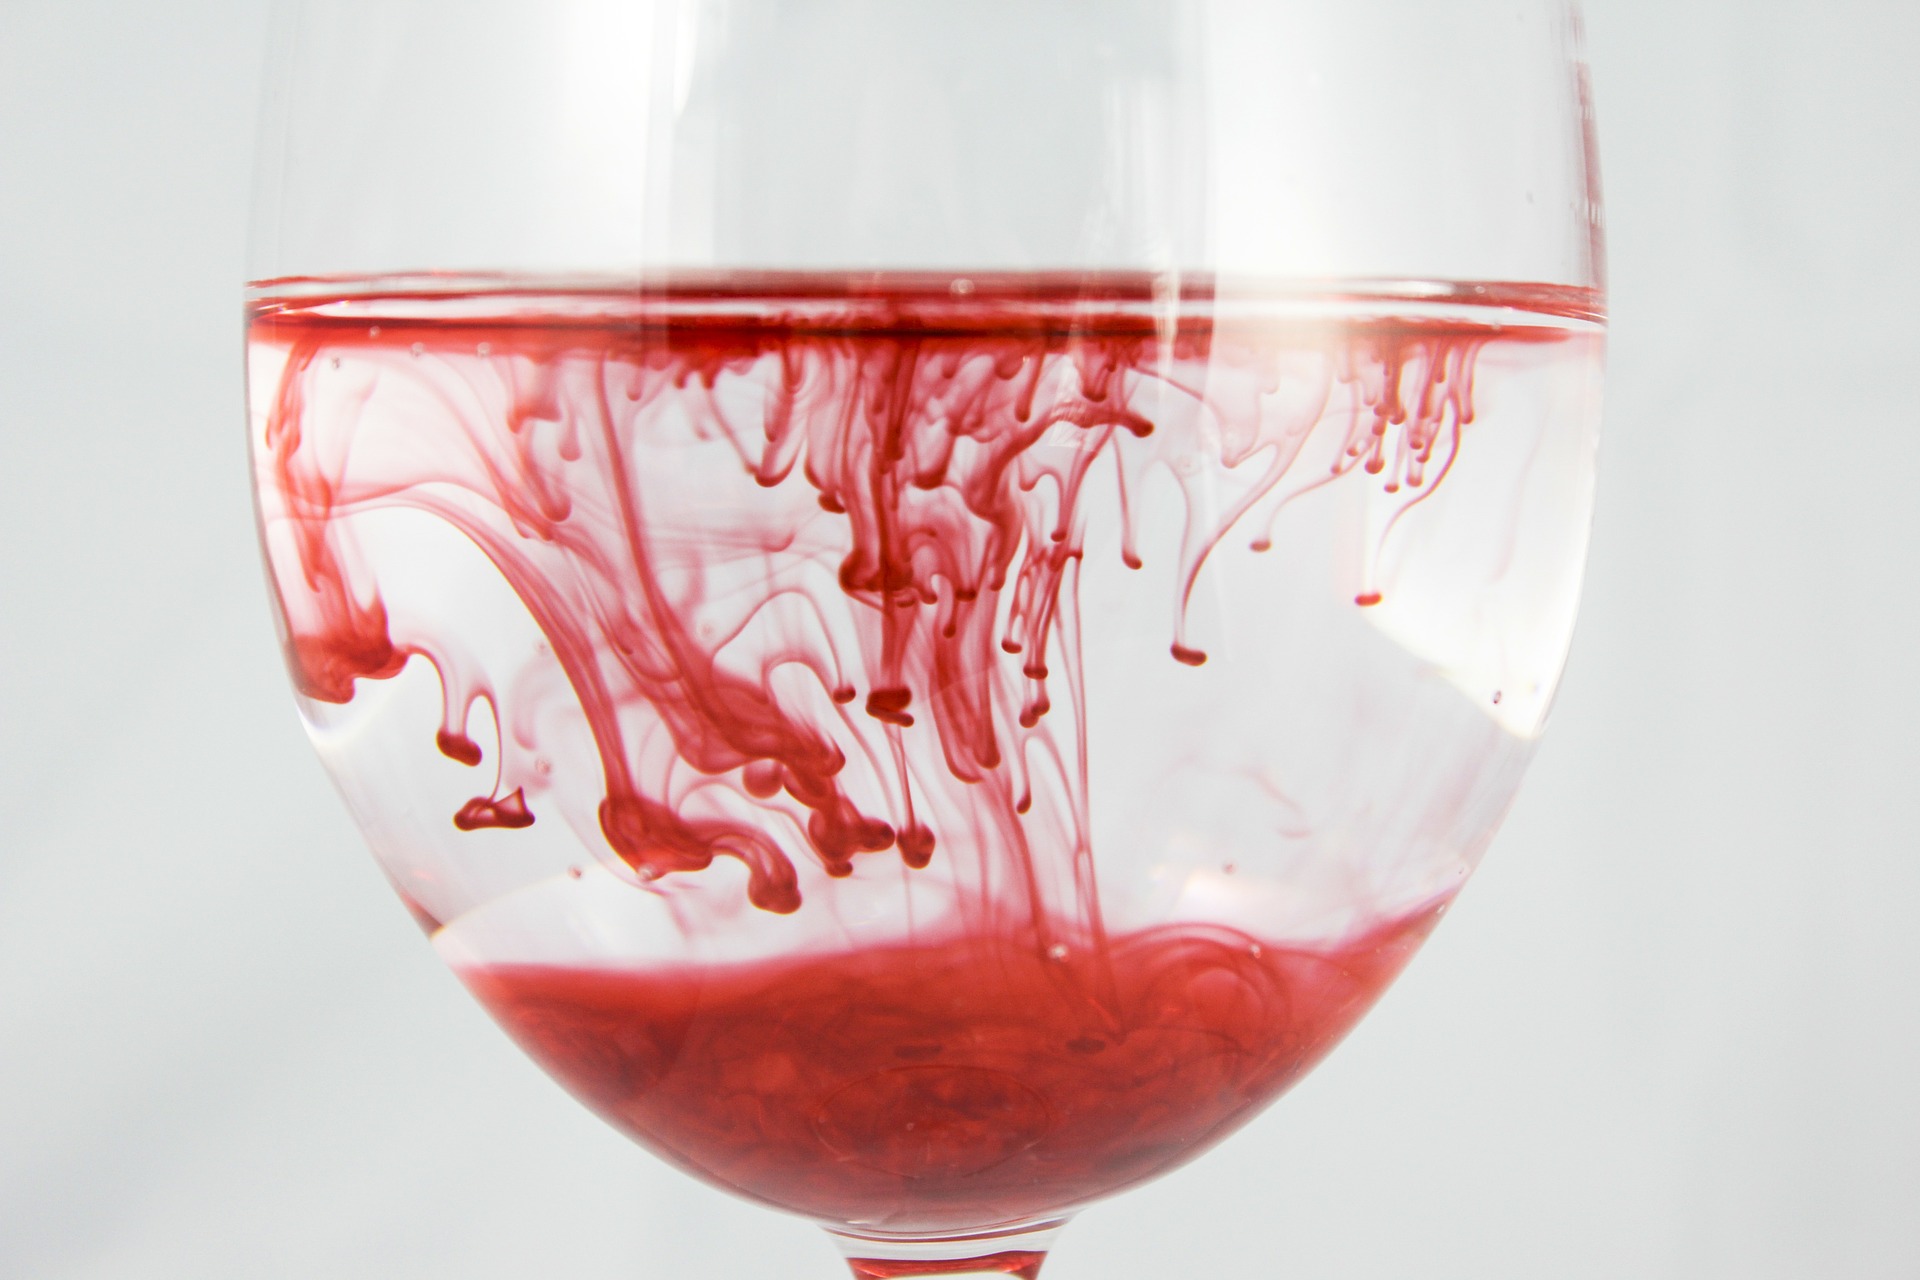 Imagem de uma taça de cristal com água, tingida por um pigmento vermelho, que parece se espalhar aos poucos no conteúdo.